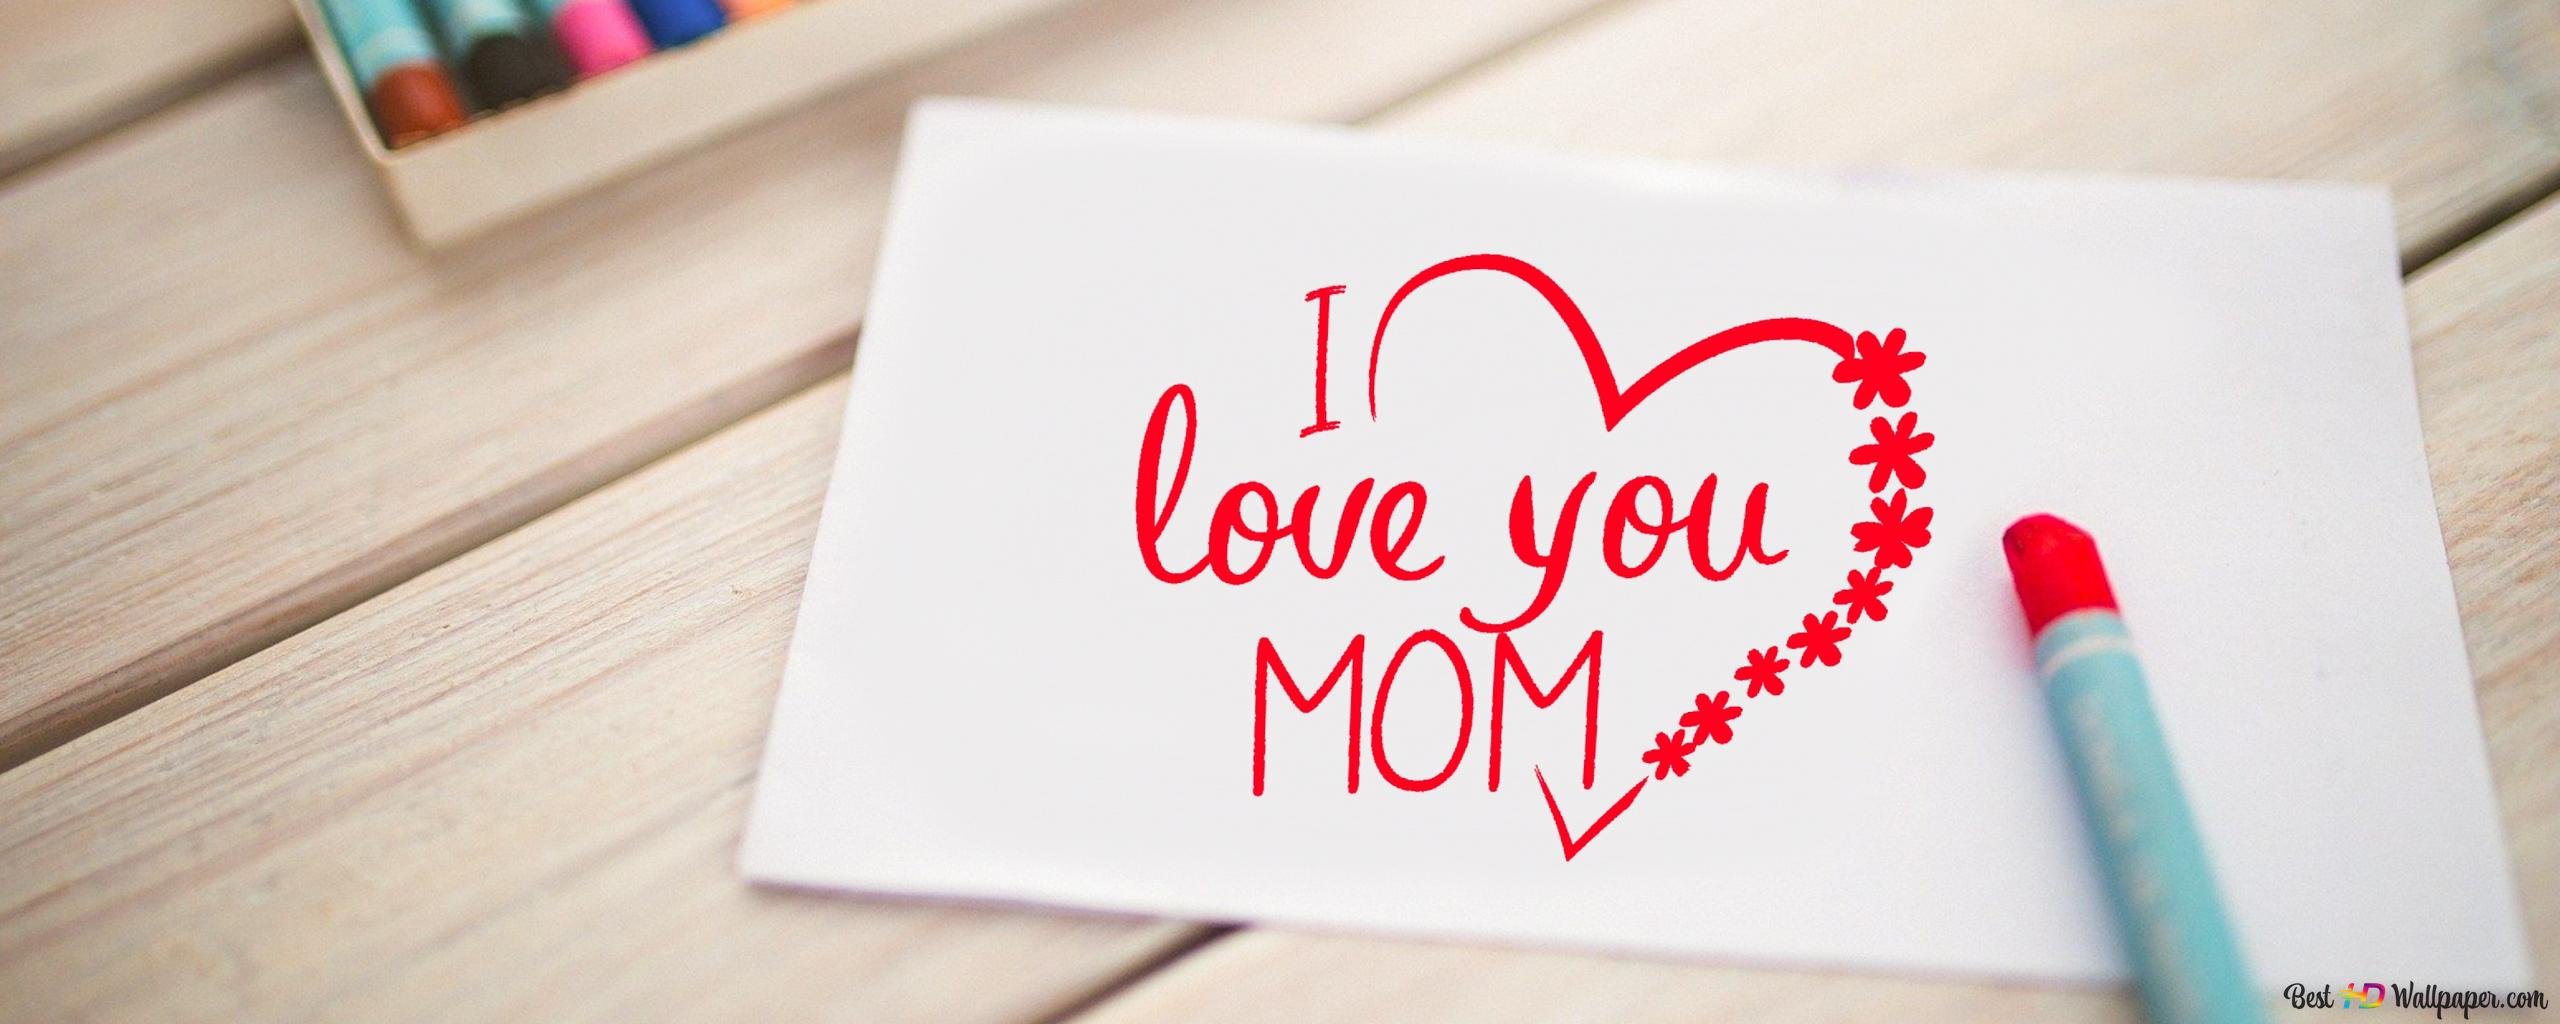 Рабочий стол мама. Мама, я тебя люблю!. Обои мама я тебя люблю. Мамочка я тебя люблю. Мама я тебя люблю письмо.